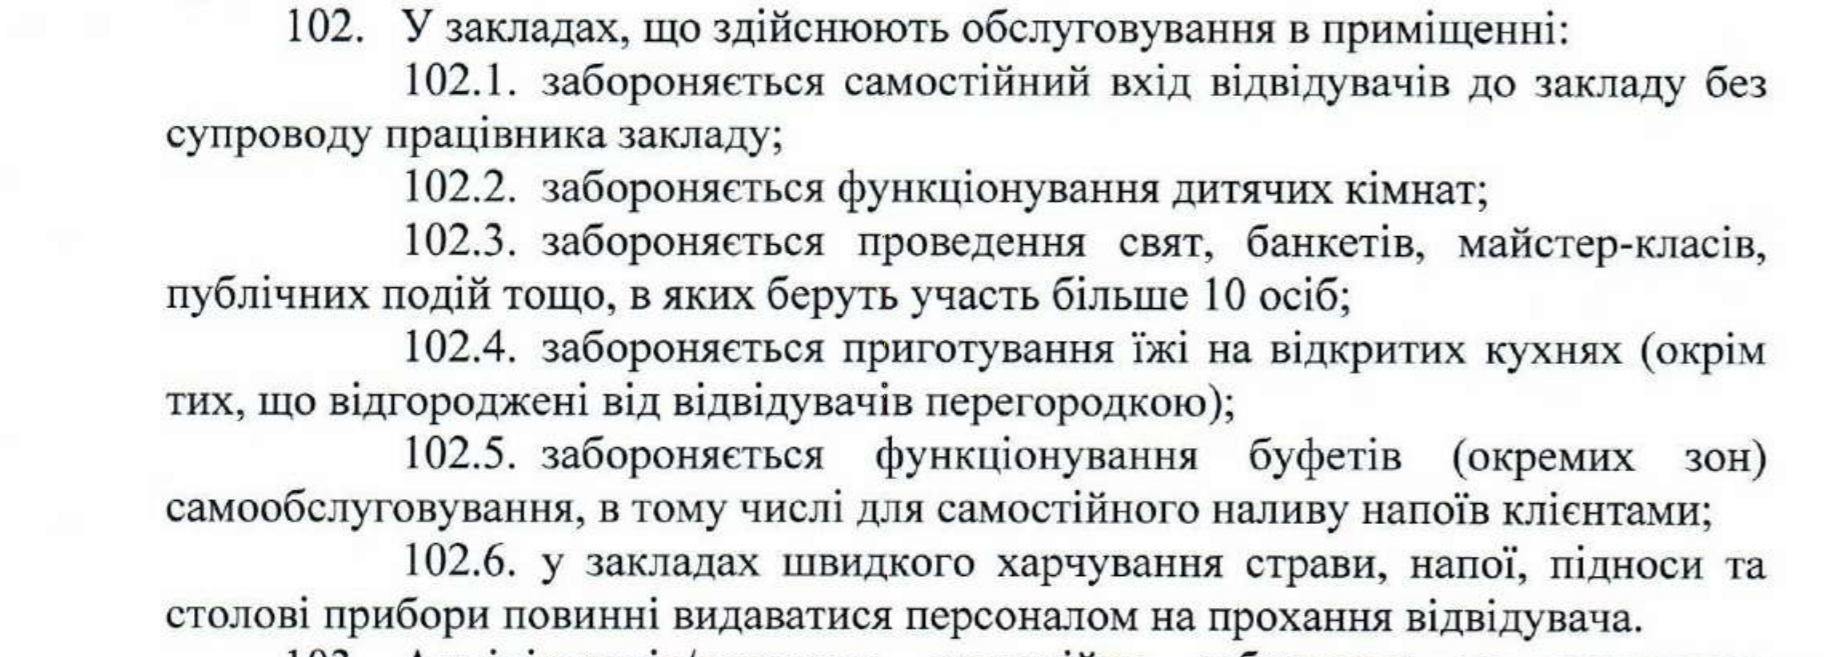 Документ, в котором говорится о работе заведений общественного питания в Киеве